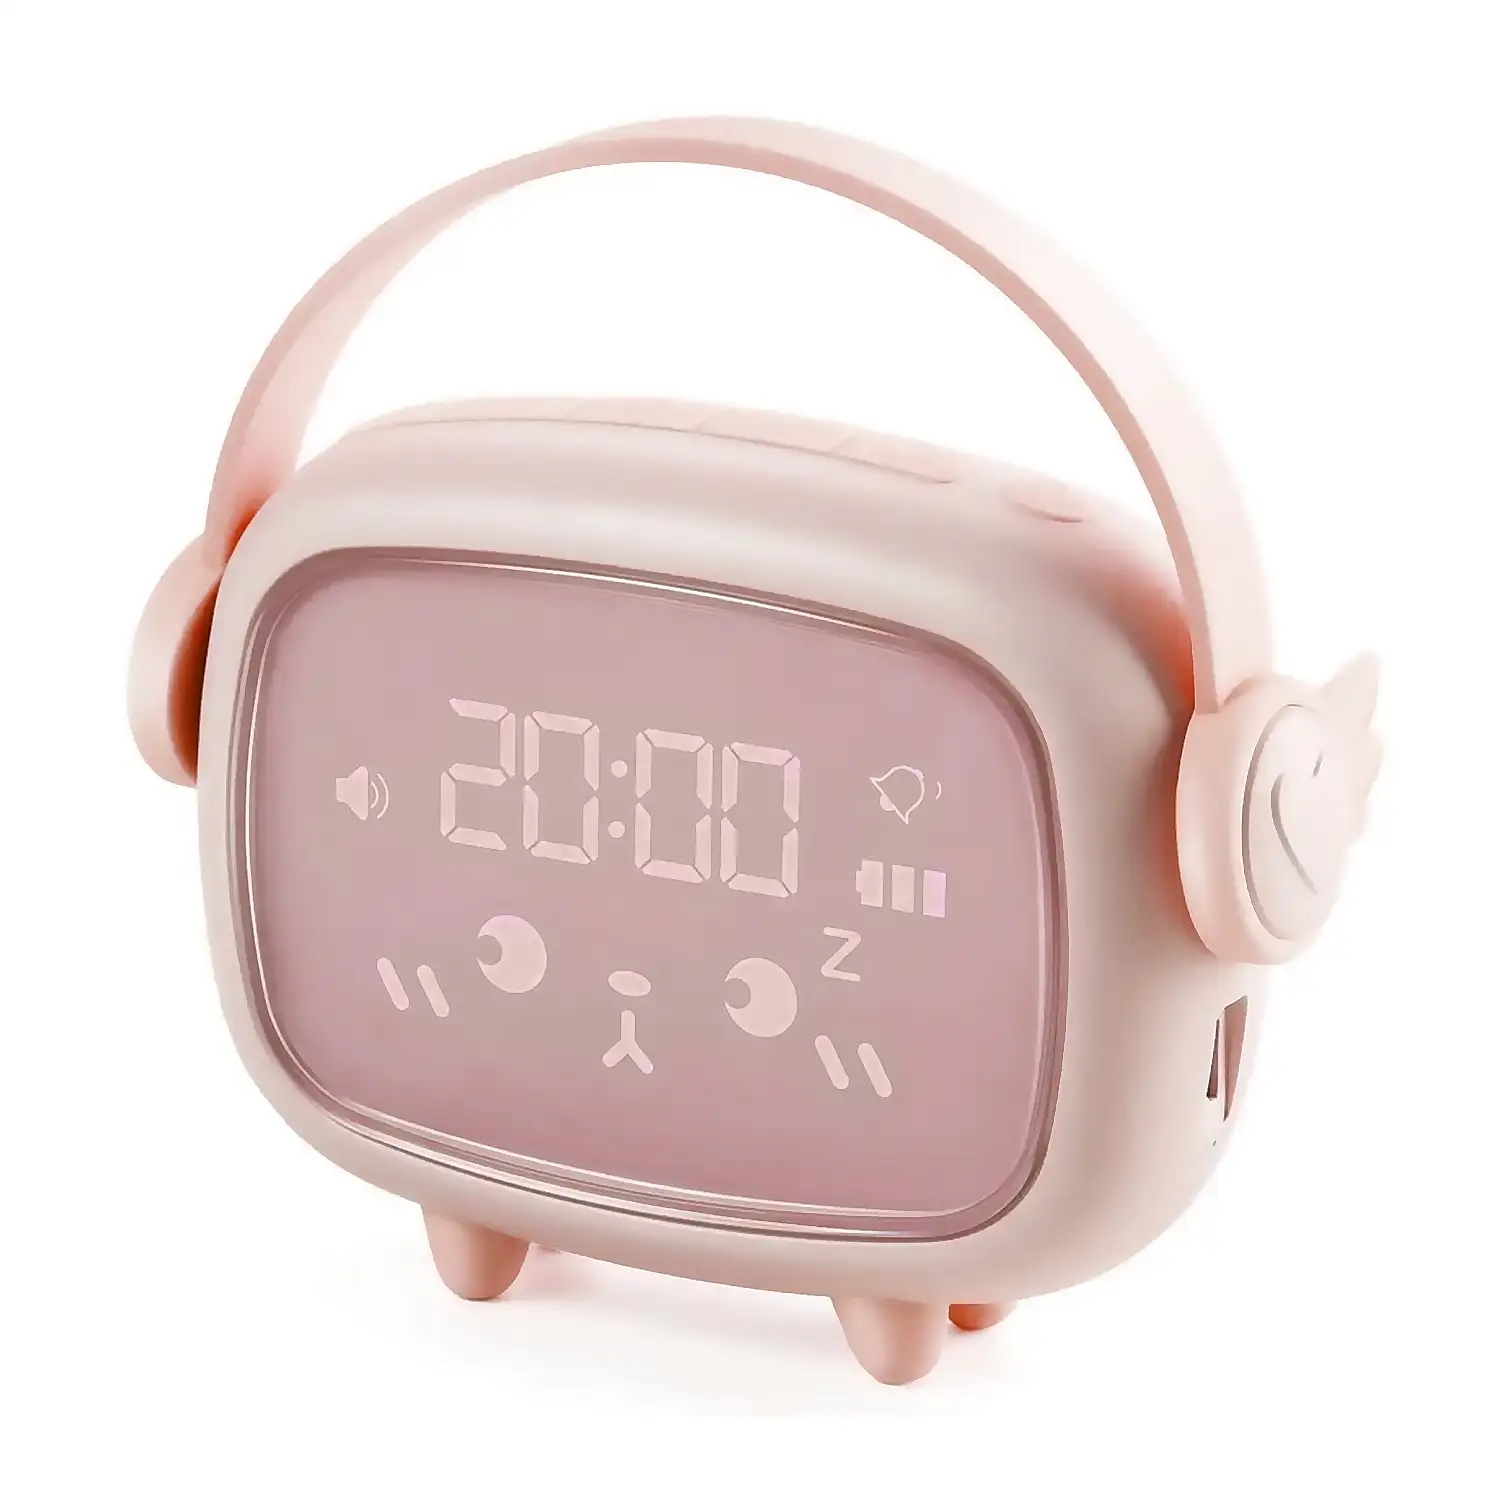 Reloj despertador infantil con luz, para entrenar el sueño, termómetro. Batería recargable.